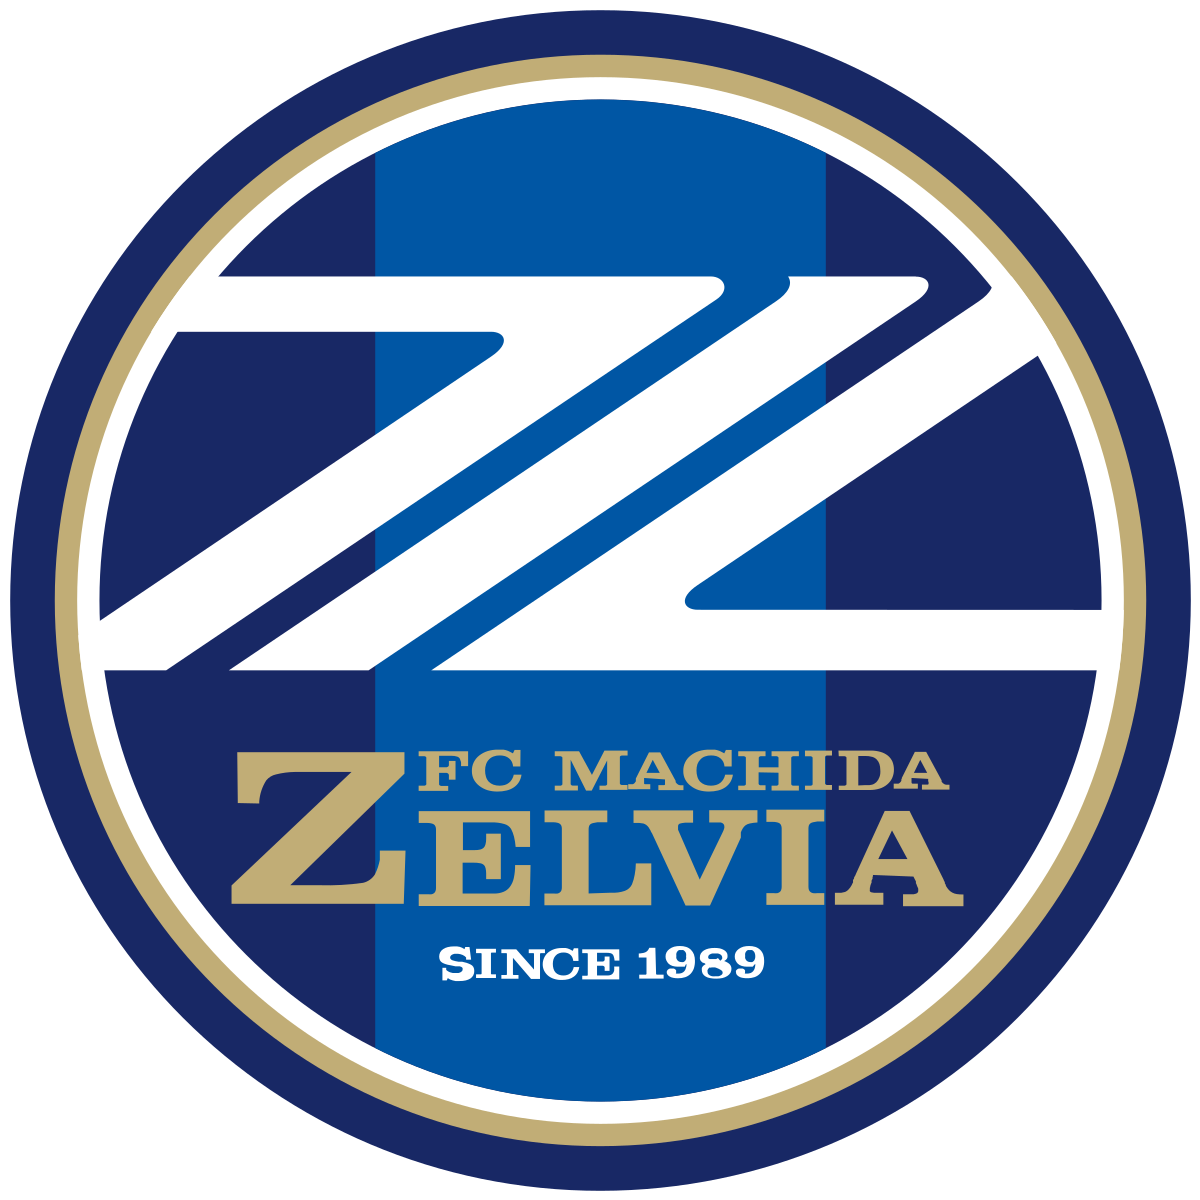 Wappen FC Machida Zelvia  26637